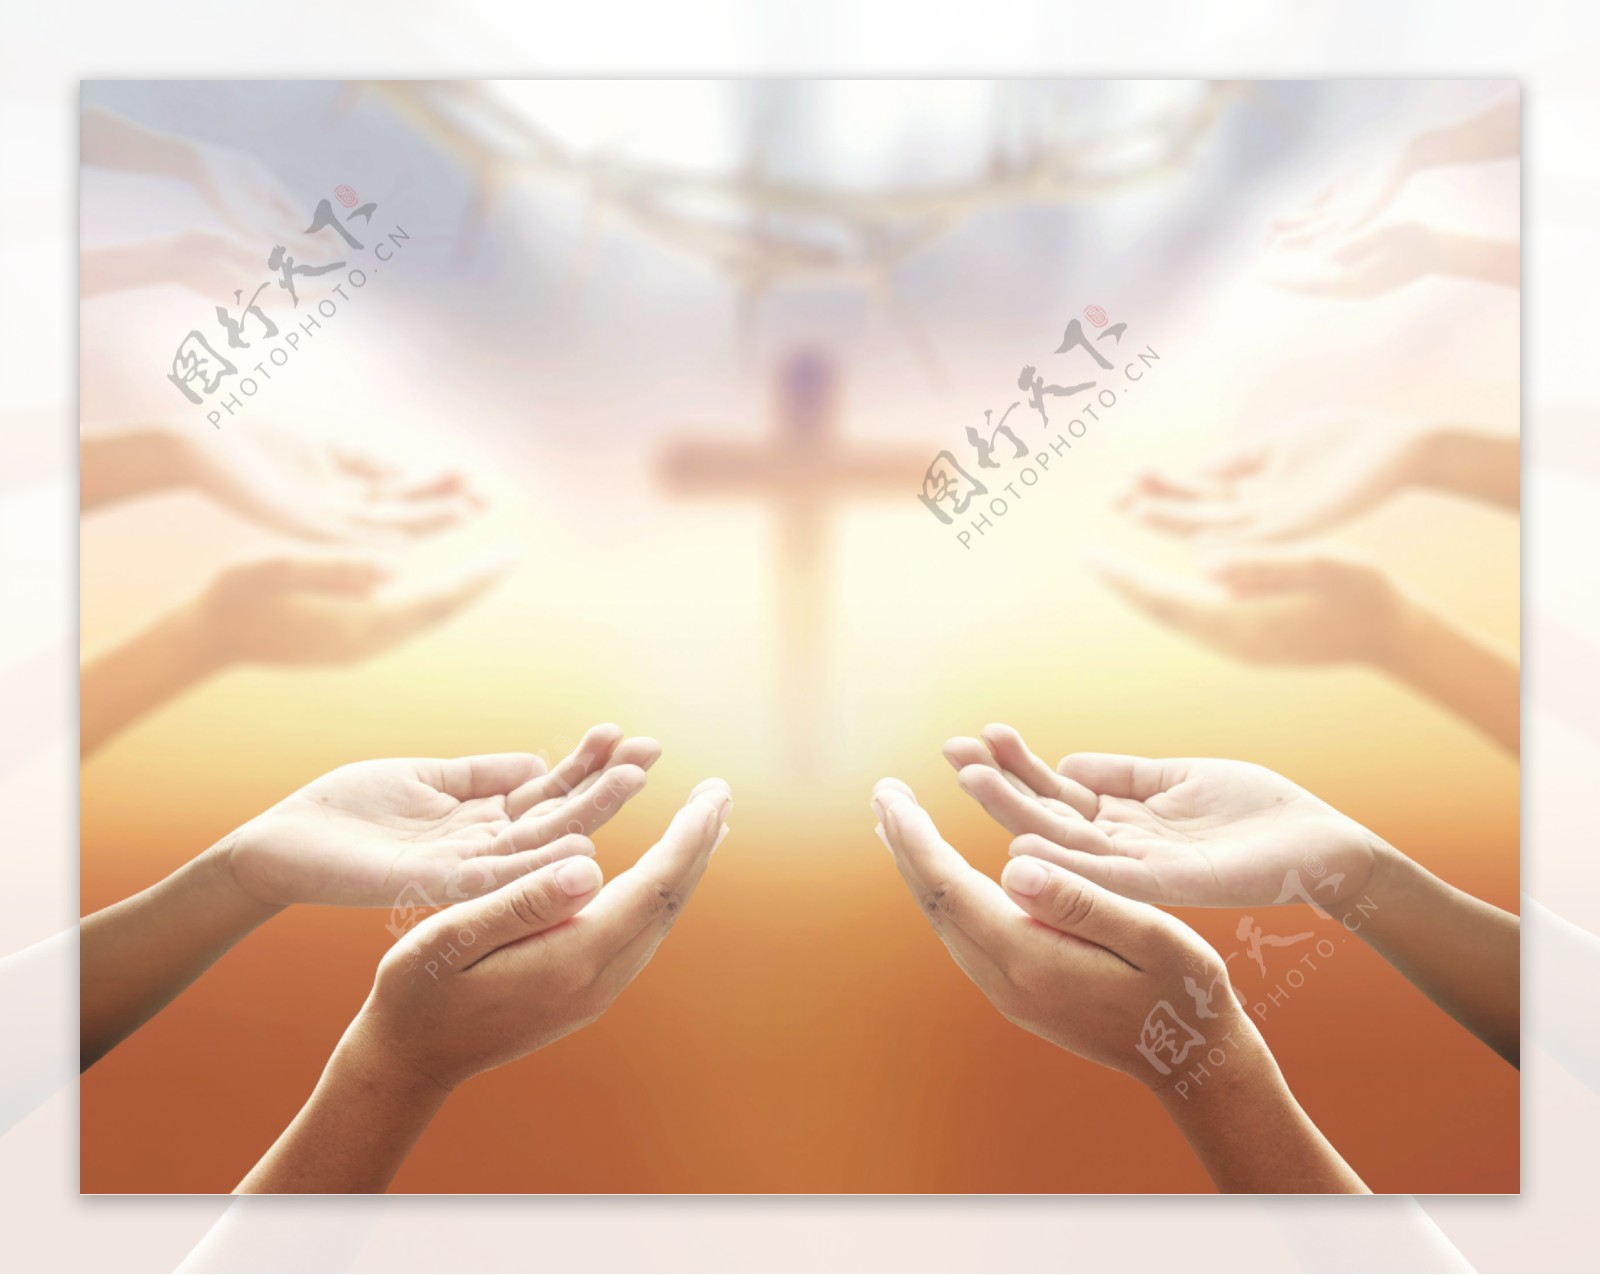 十字架与祷告手势图片